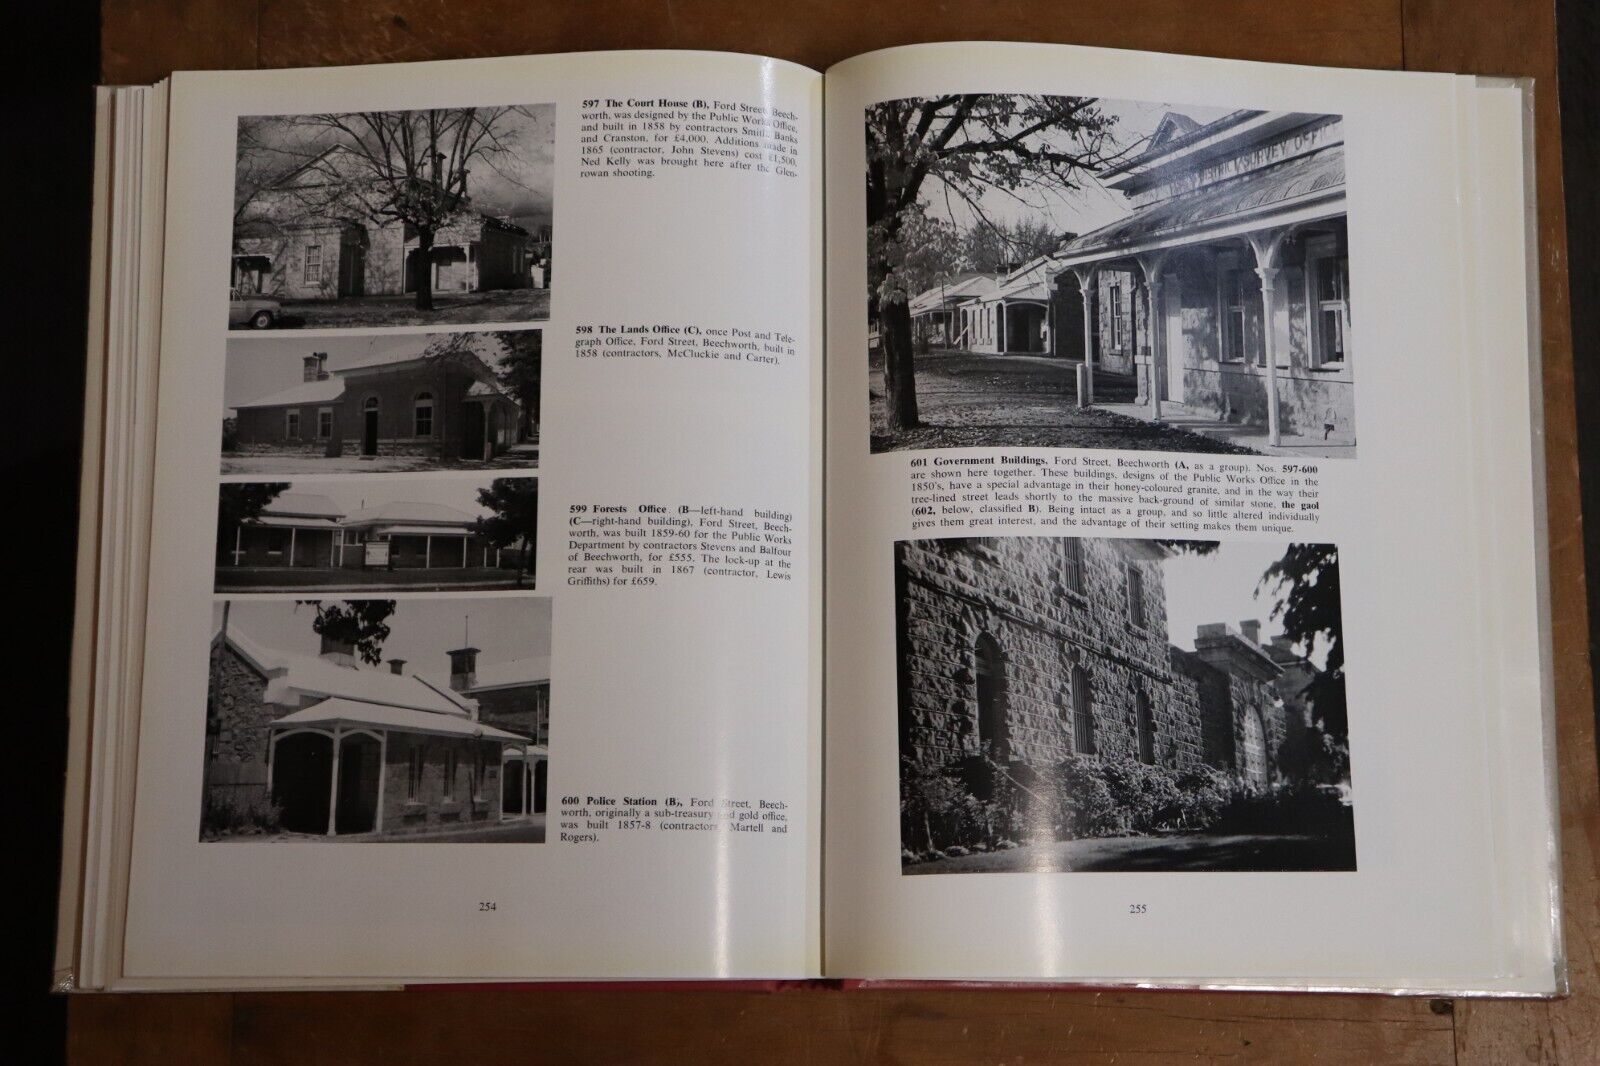 Historic Building of Victoria - 1966 - 1st Edition Australian Architecture Book